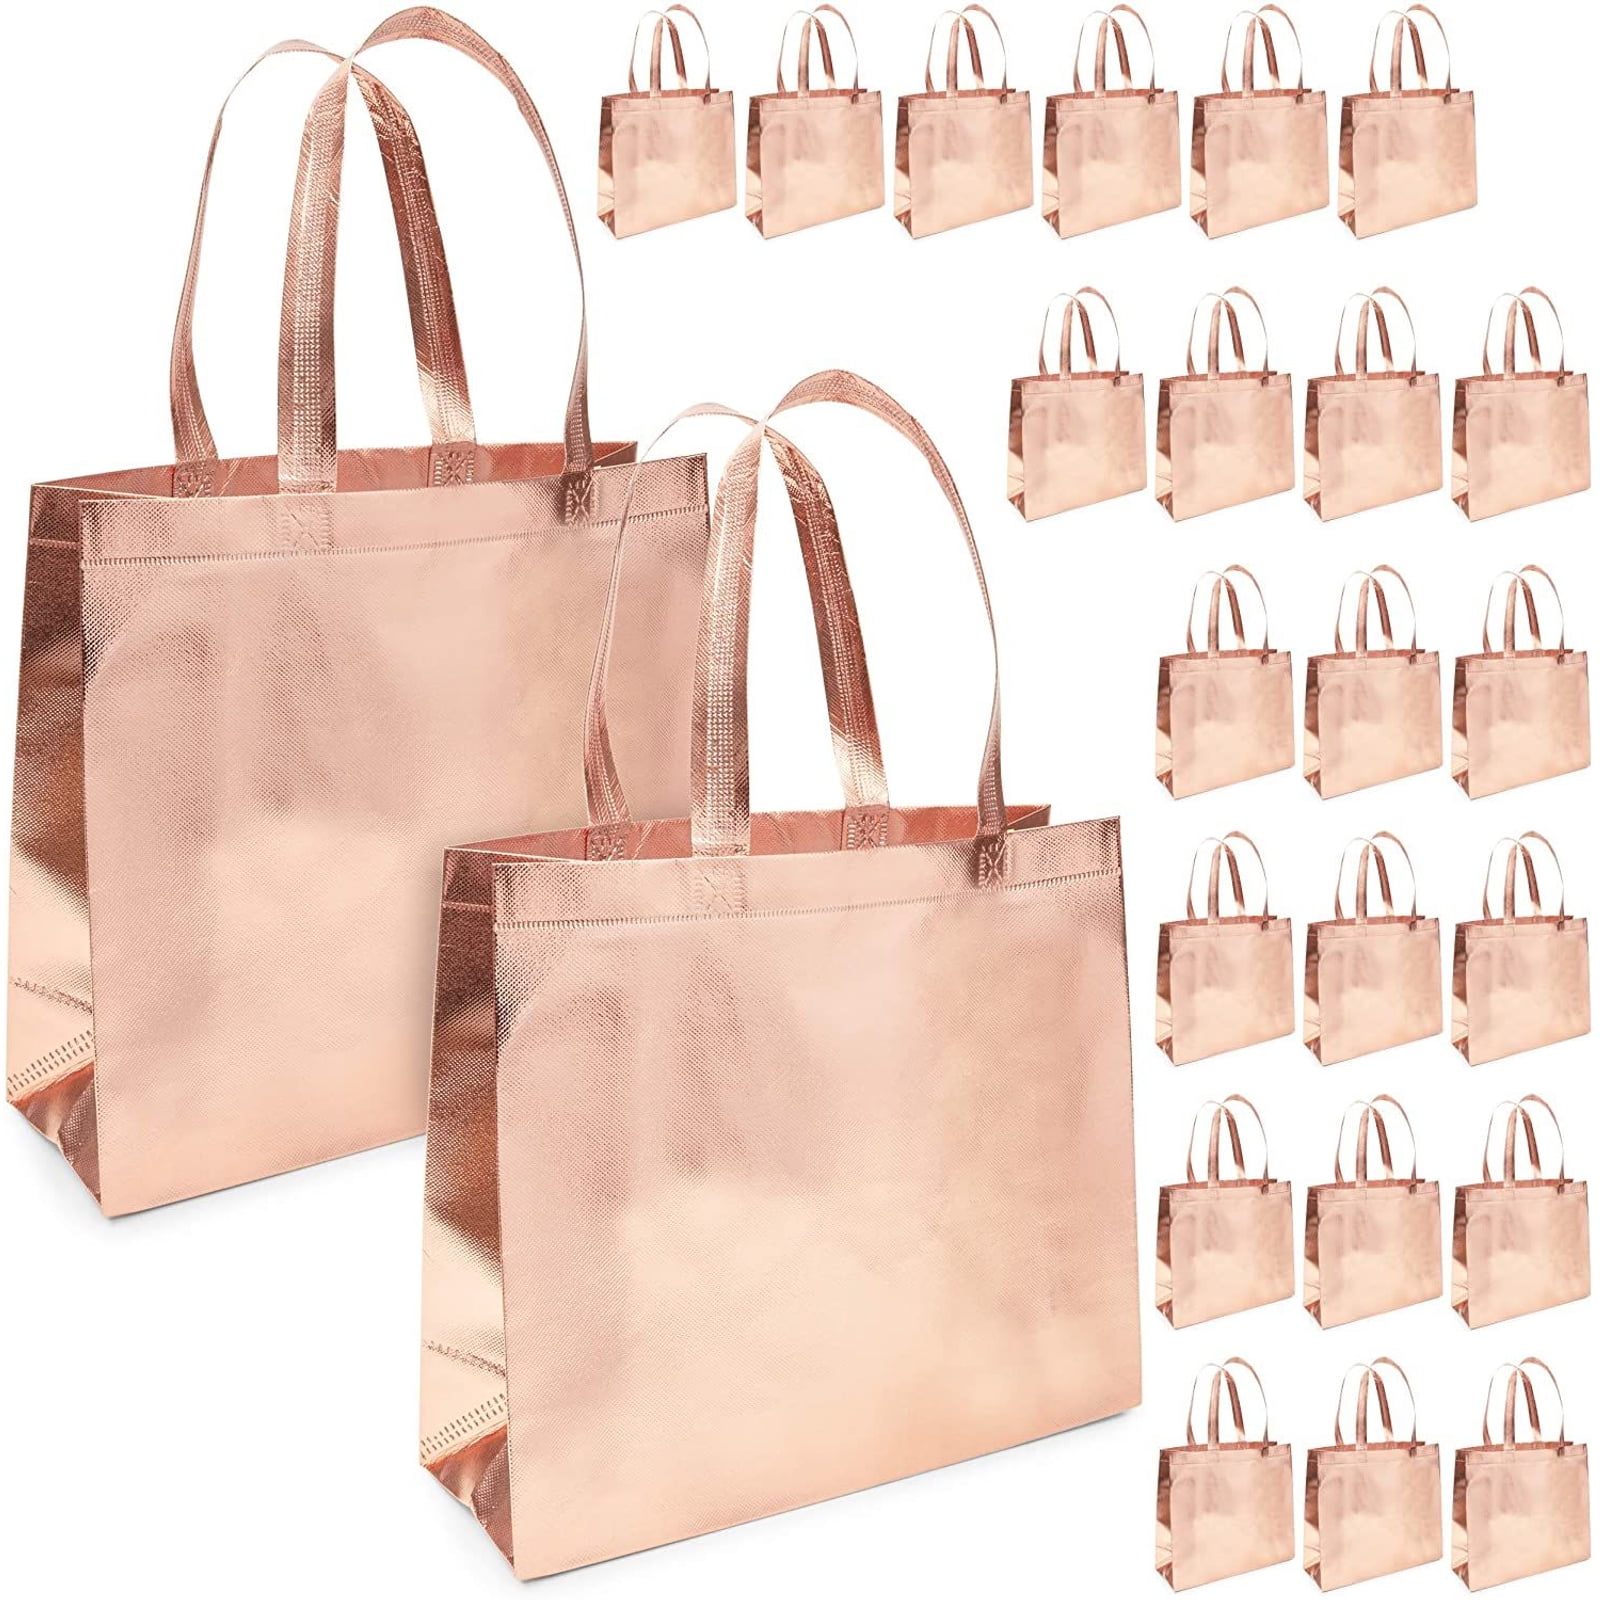 8 X Shopping Bag Tropical Reusable Grocery Tote Carry Portable Handbag Non Woven 